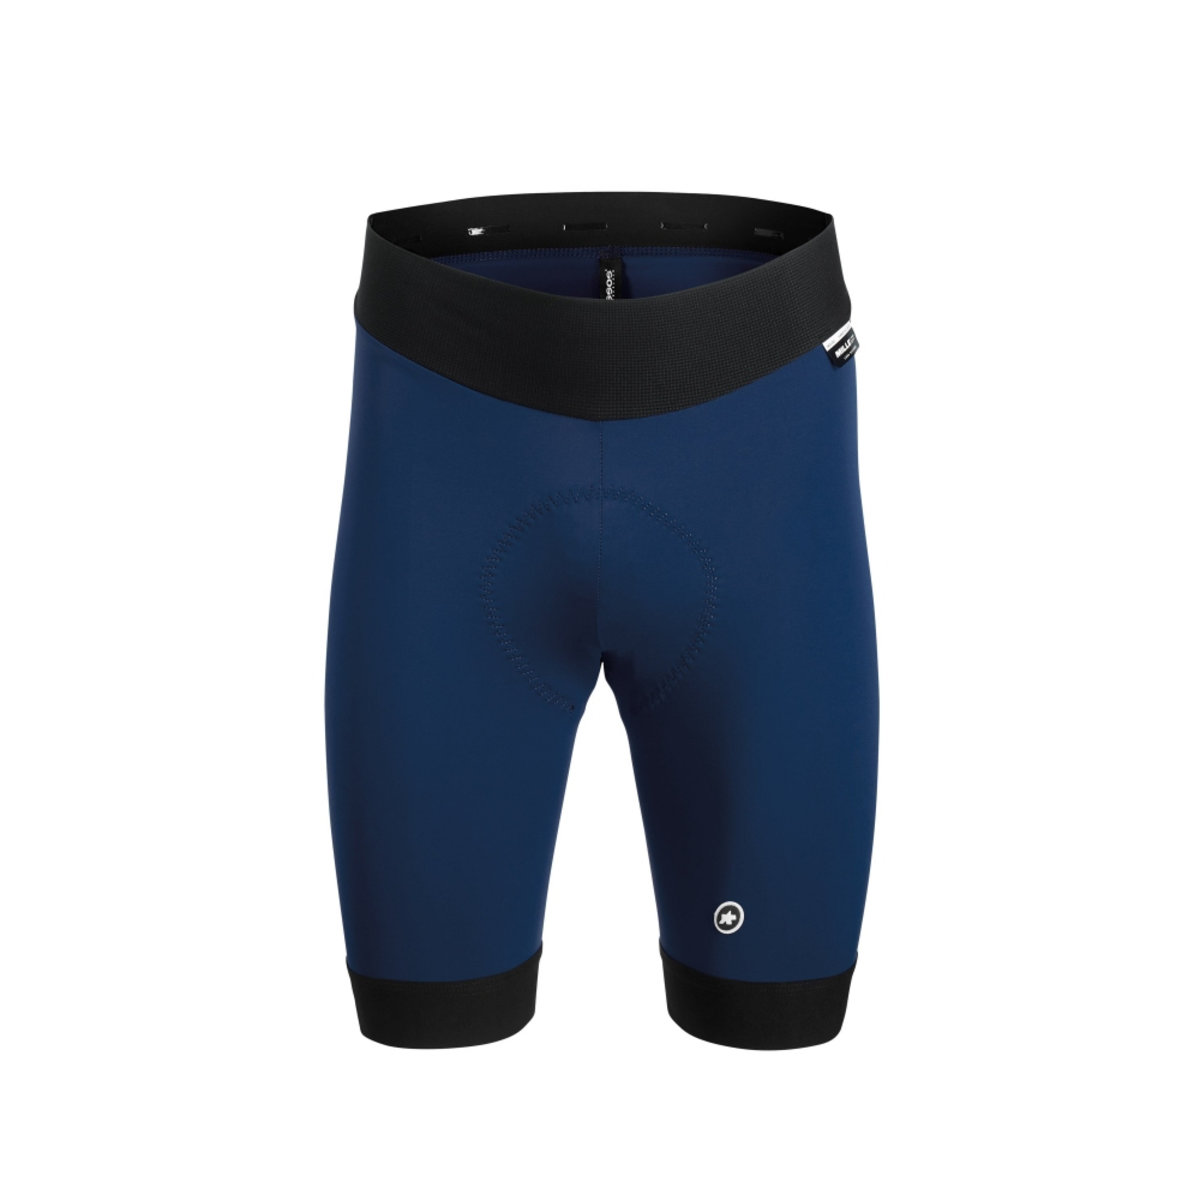 Велотрусы ASSOS Mille GT Half Shorts Caleum Blue, без лямок, мужские, синие с черным, XS фото 